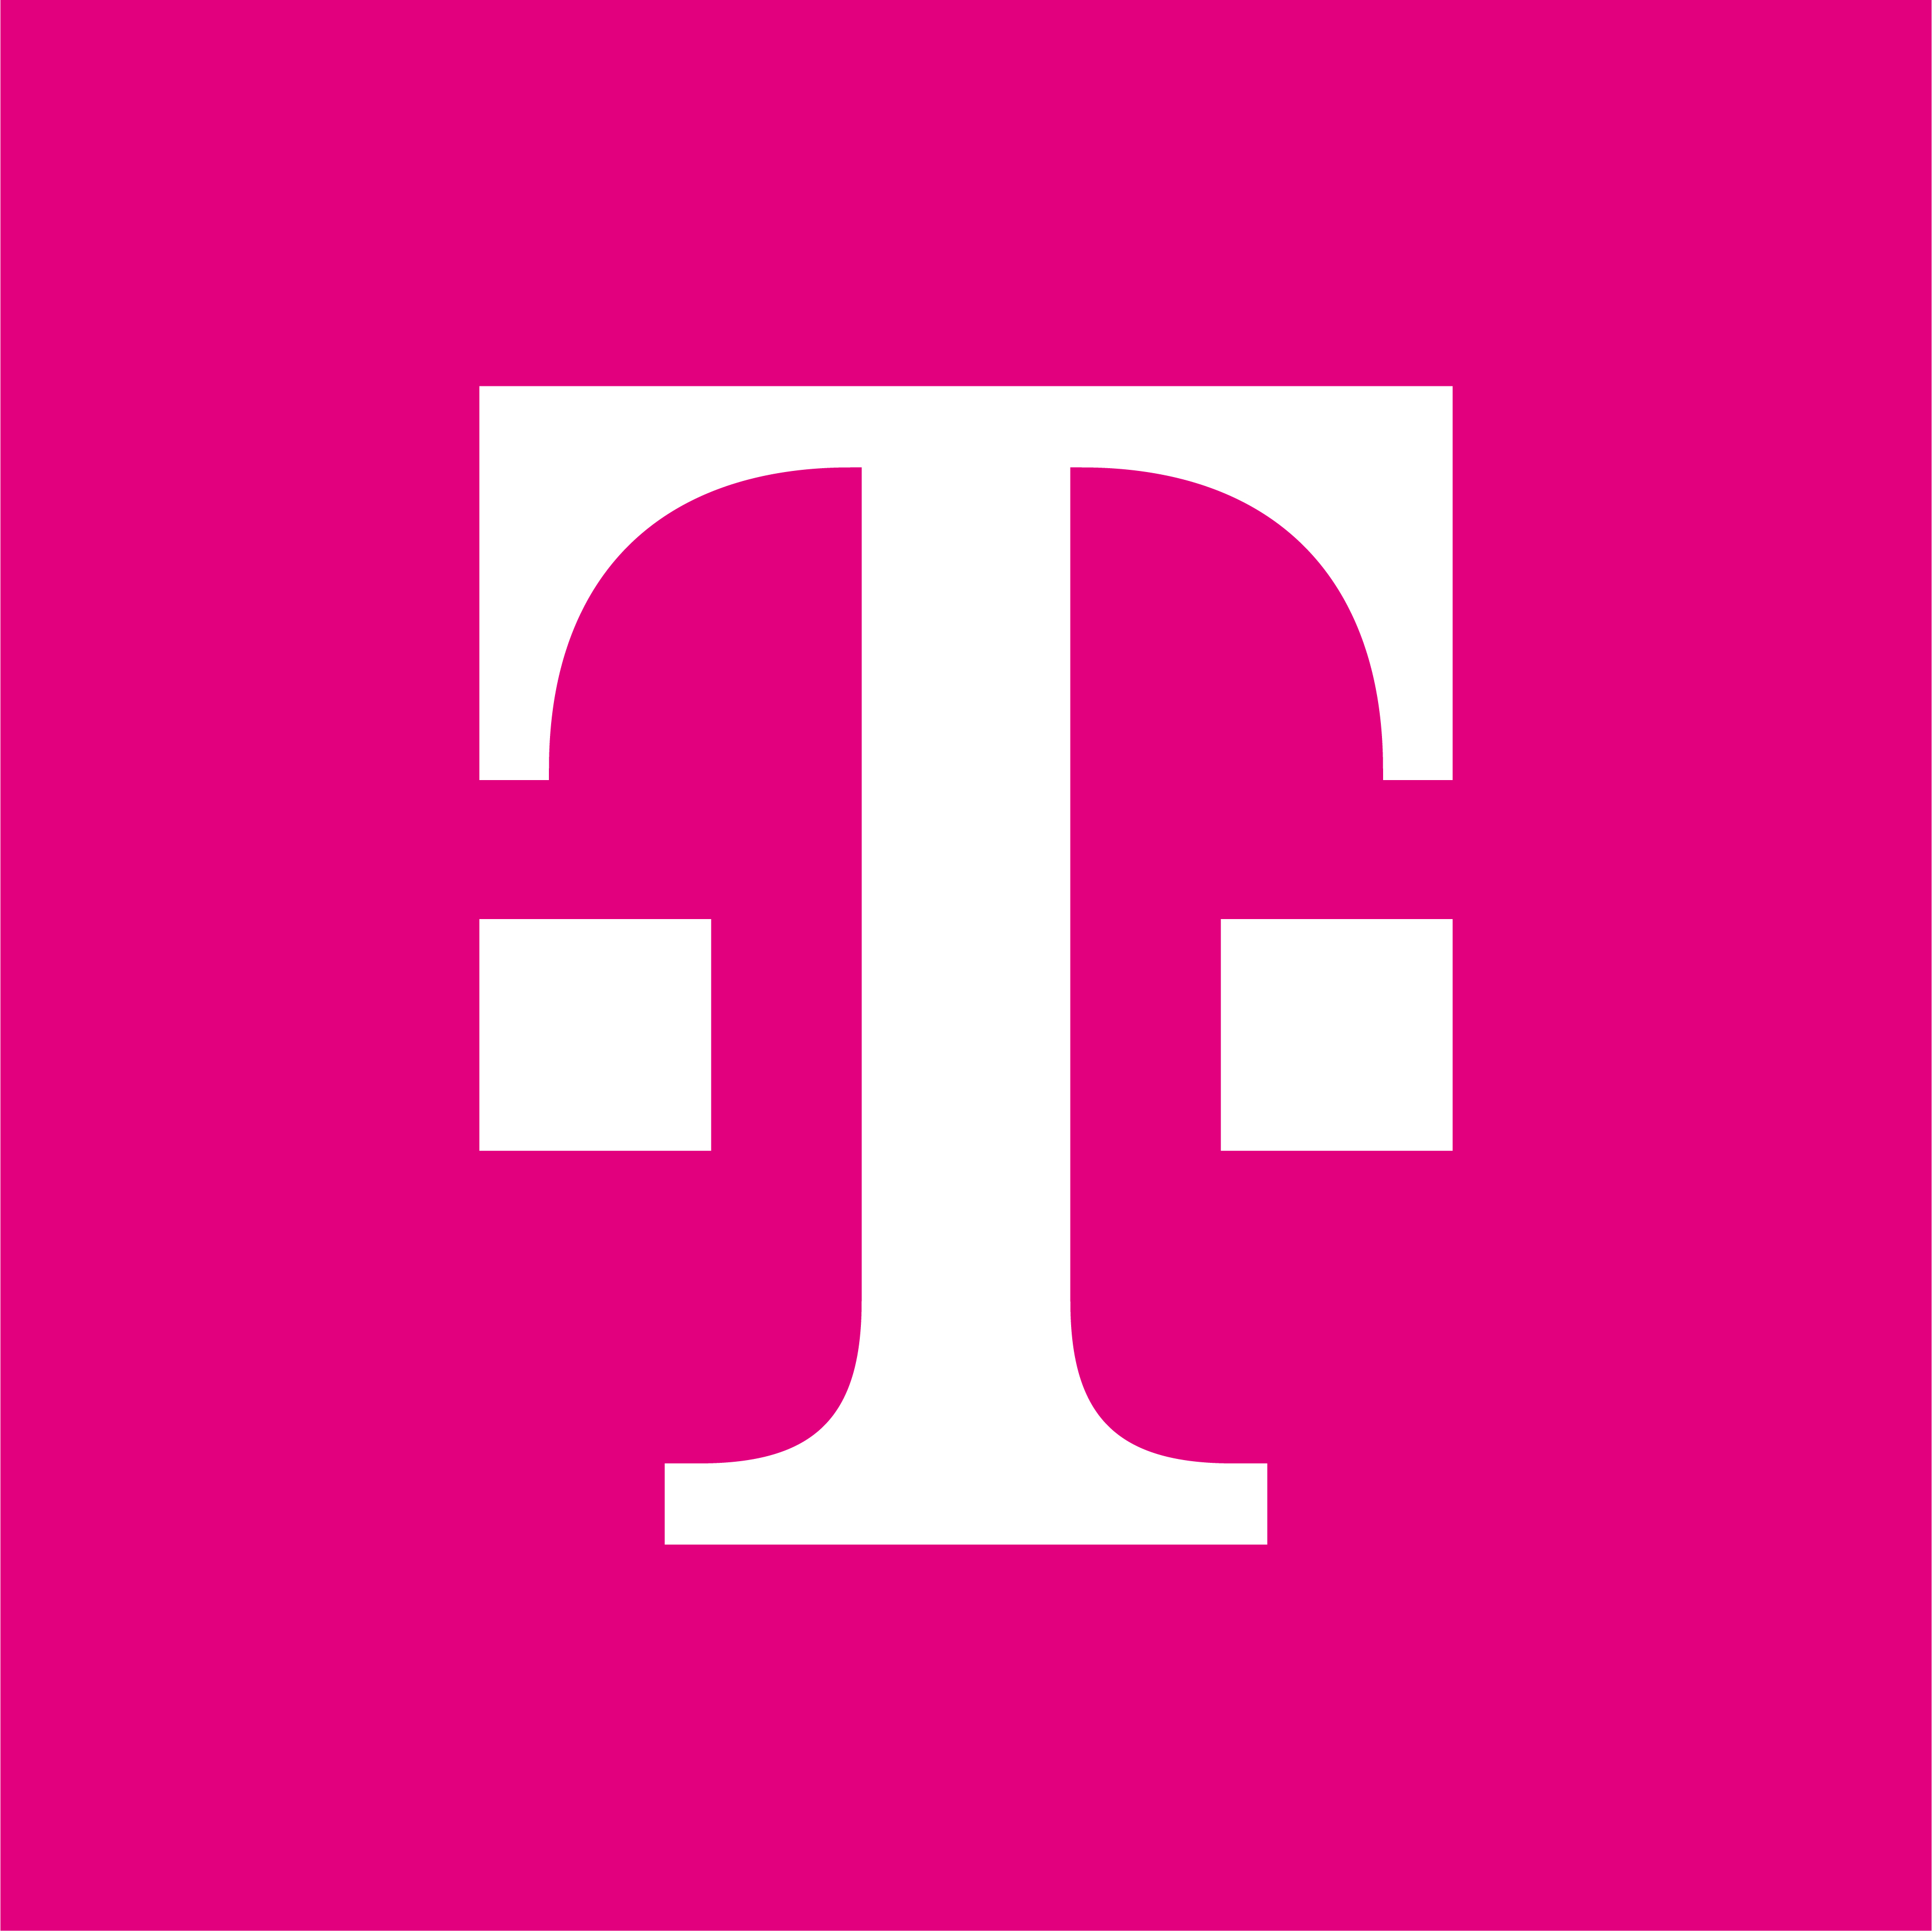 Reload Deutsche Telekom on PhoneTopups